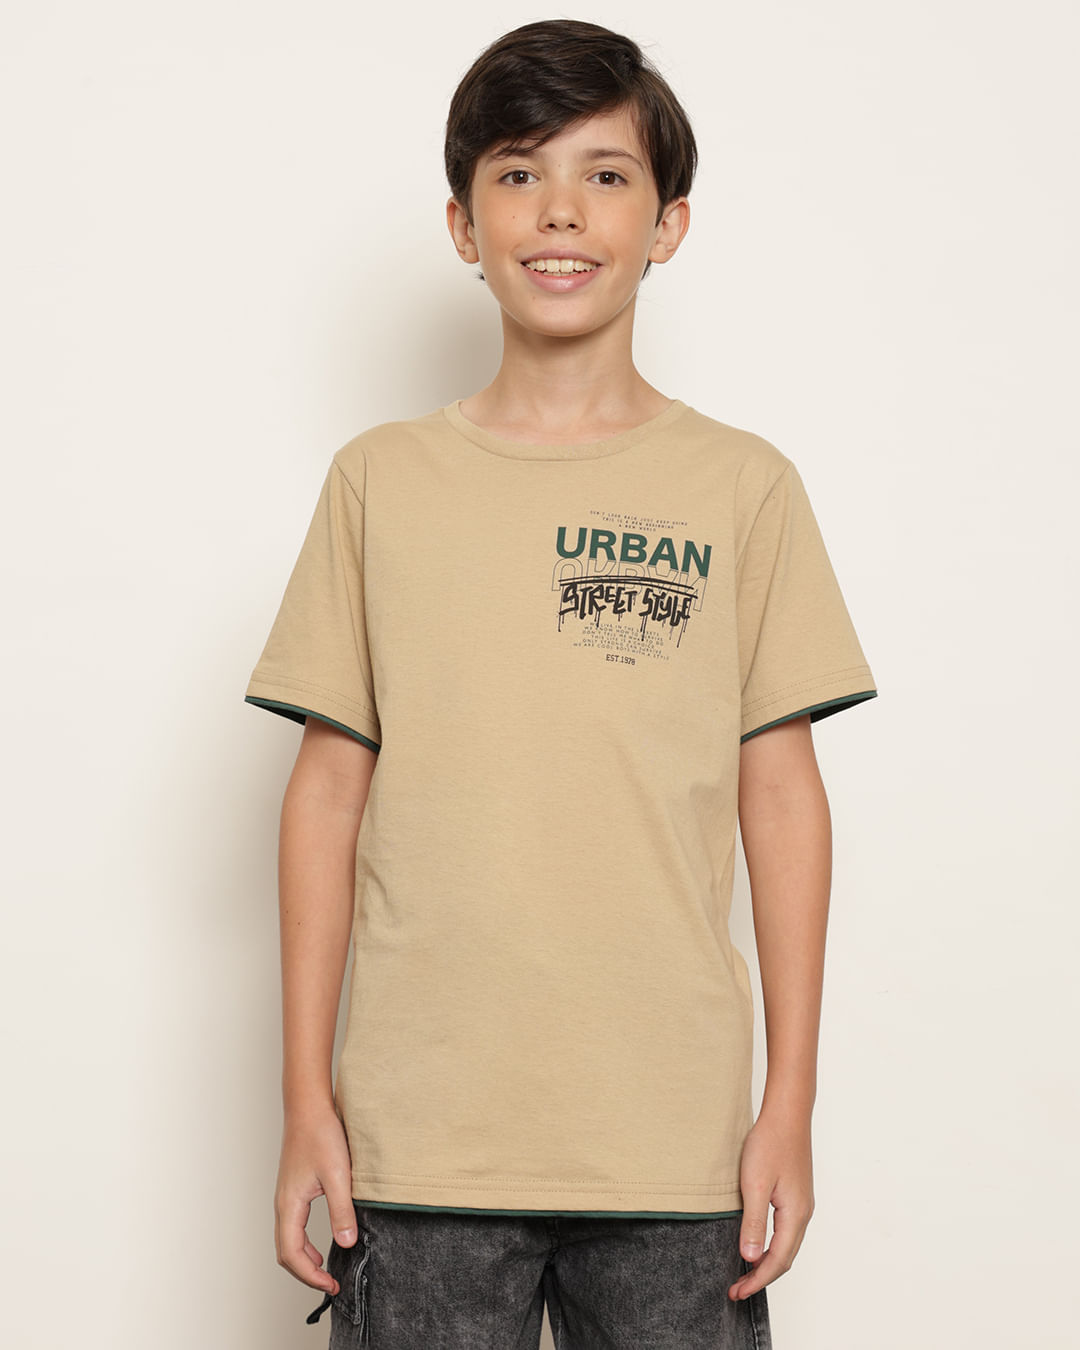 Camiseta-T39183-Mc-M-1016-Urbano---Bege-Medio